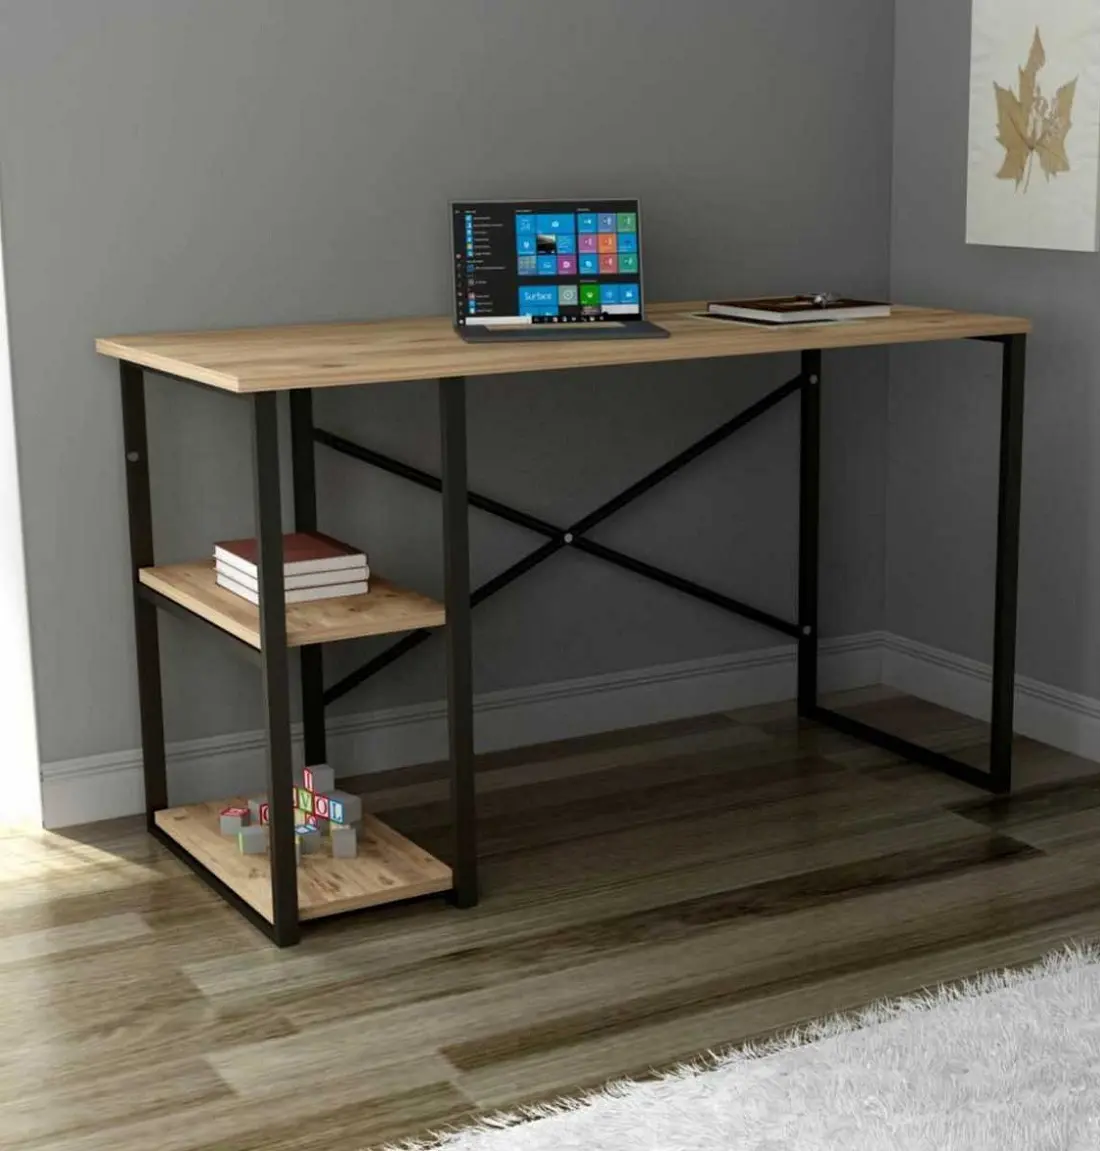 Fornitore di mobili turchi fai da te tavolo da scrivania per Computer in legno con struttura in metallo per lavoro a distanza in casa e ufficio OEM Factory turchia